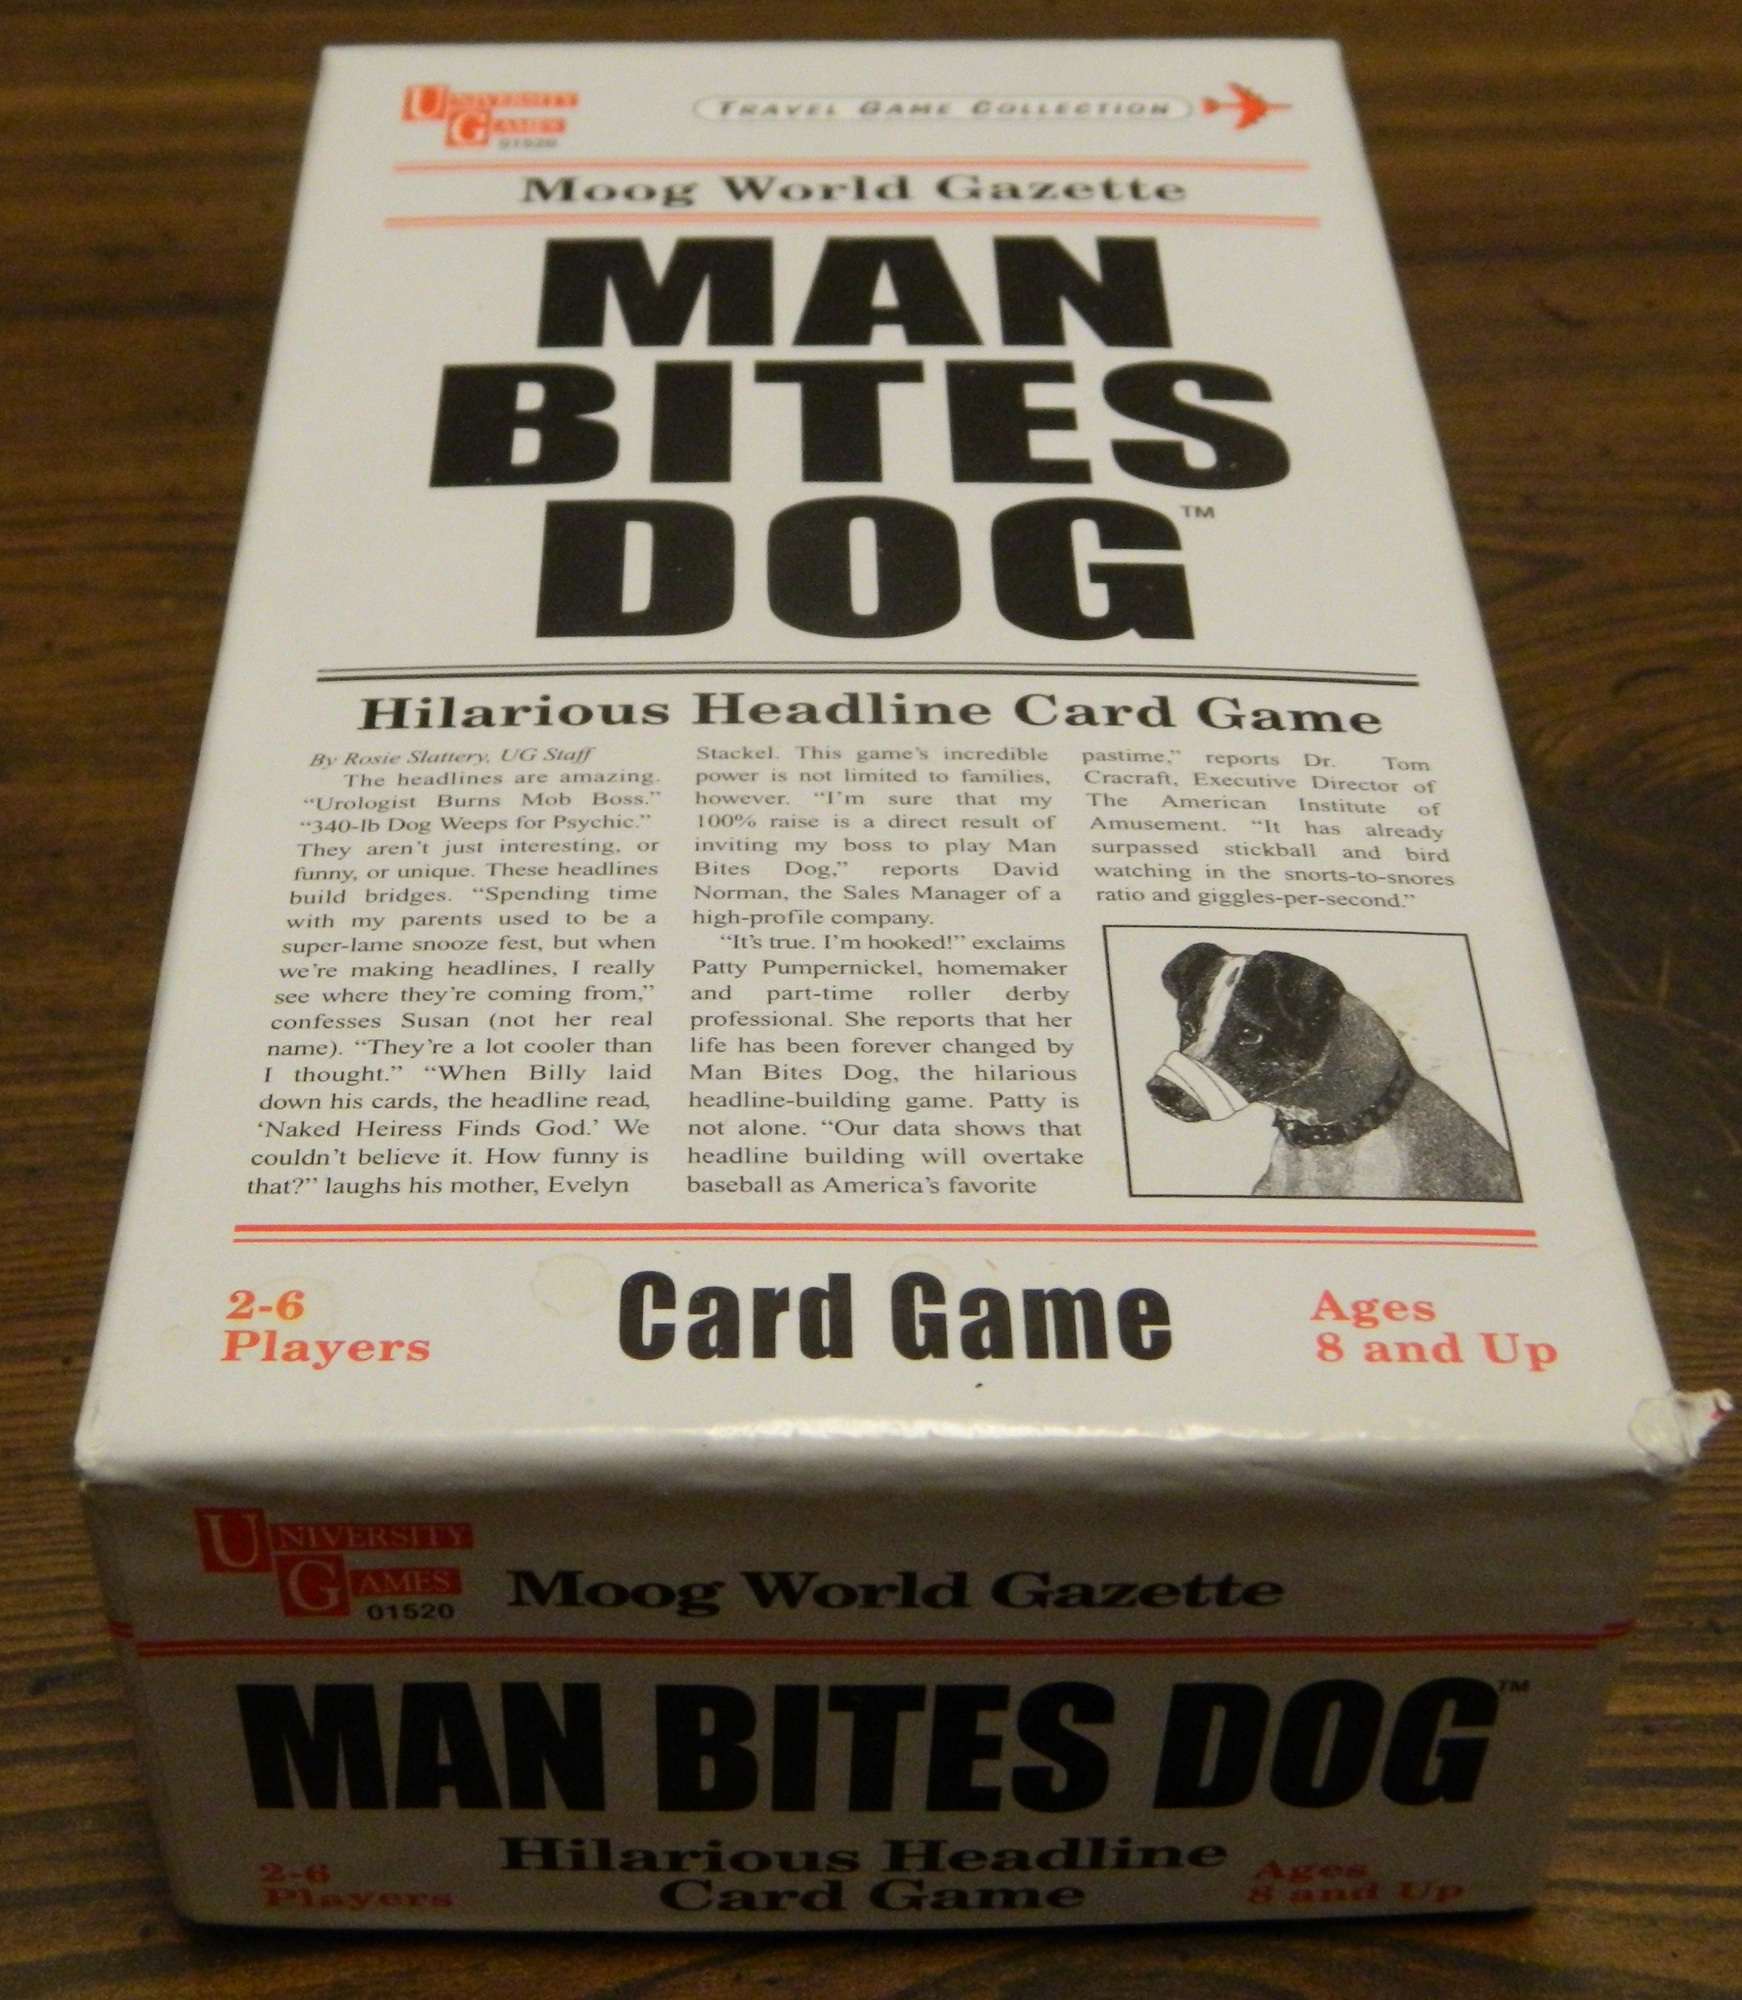 2006 University Games Man Bites Dog Board Game for sale online 